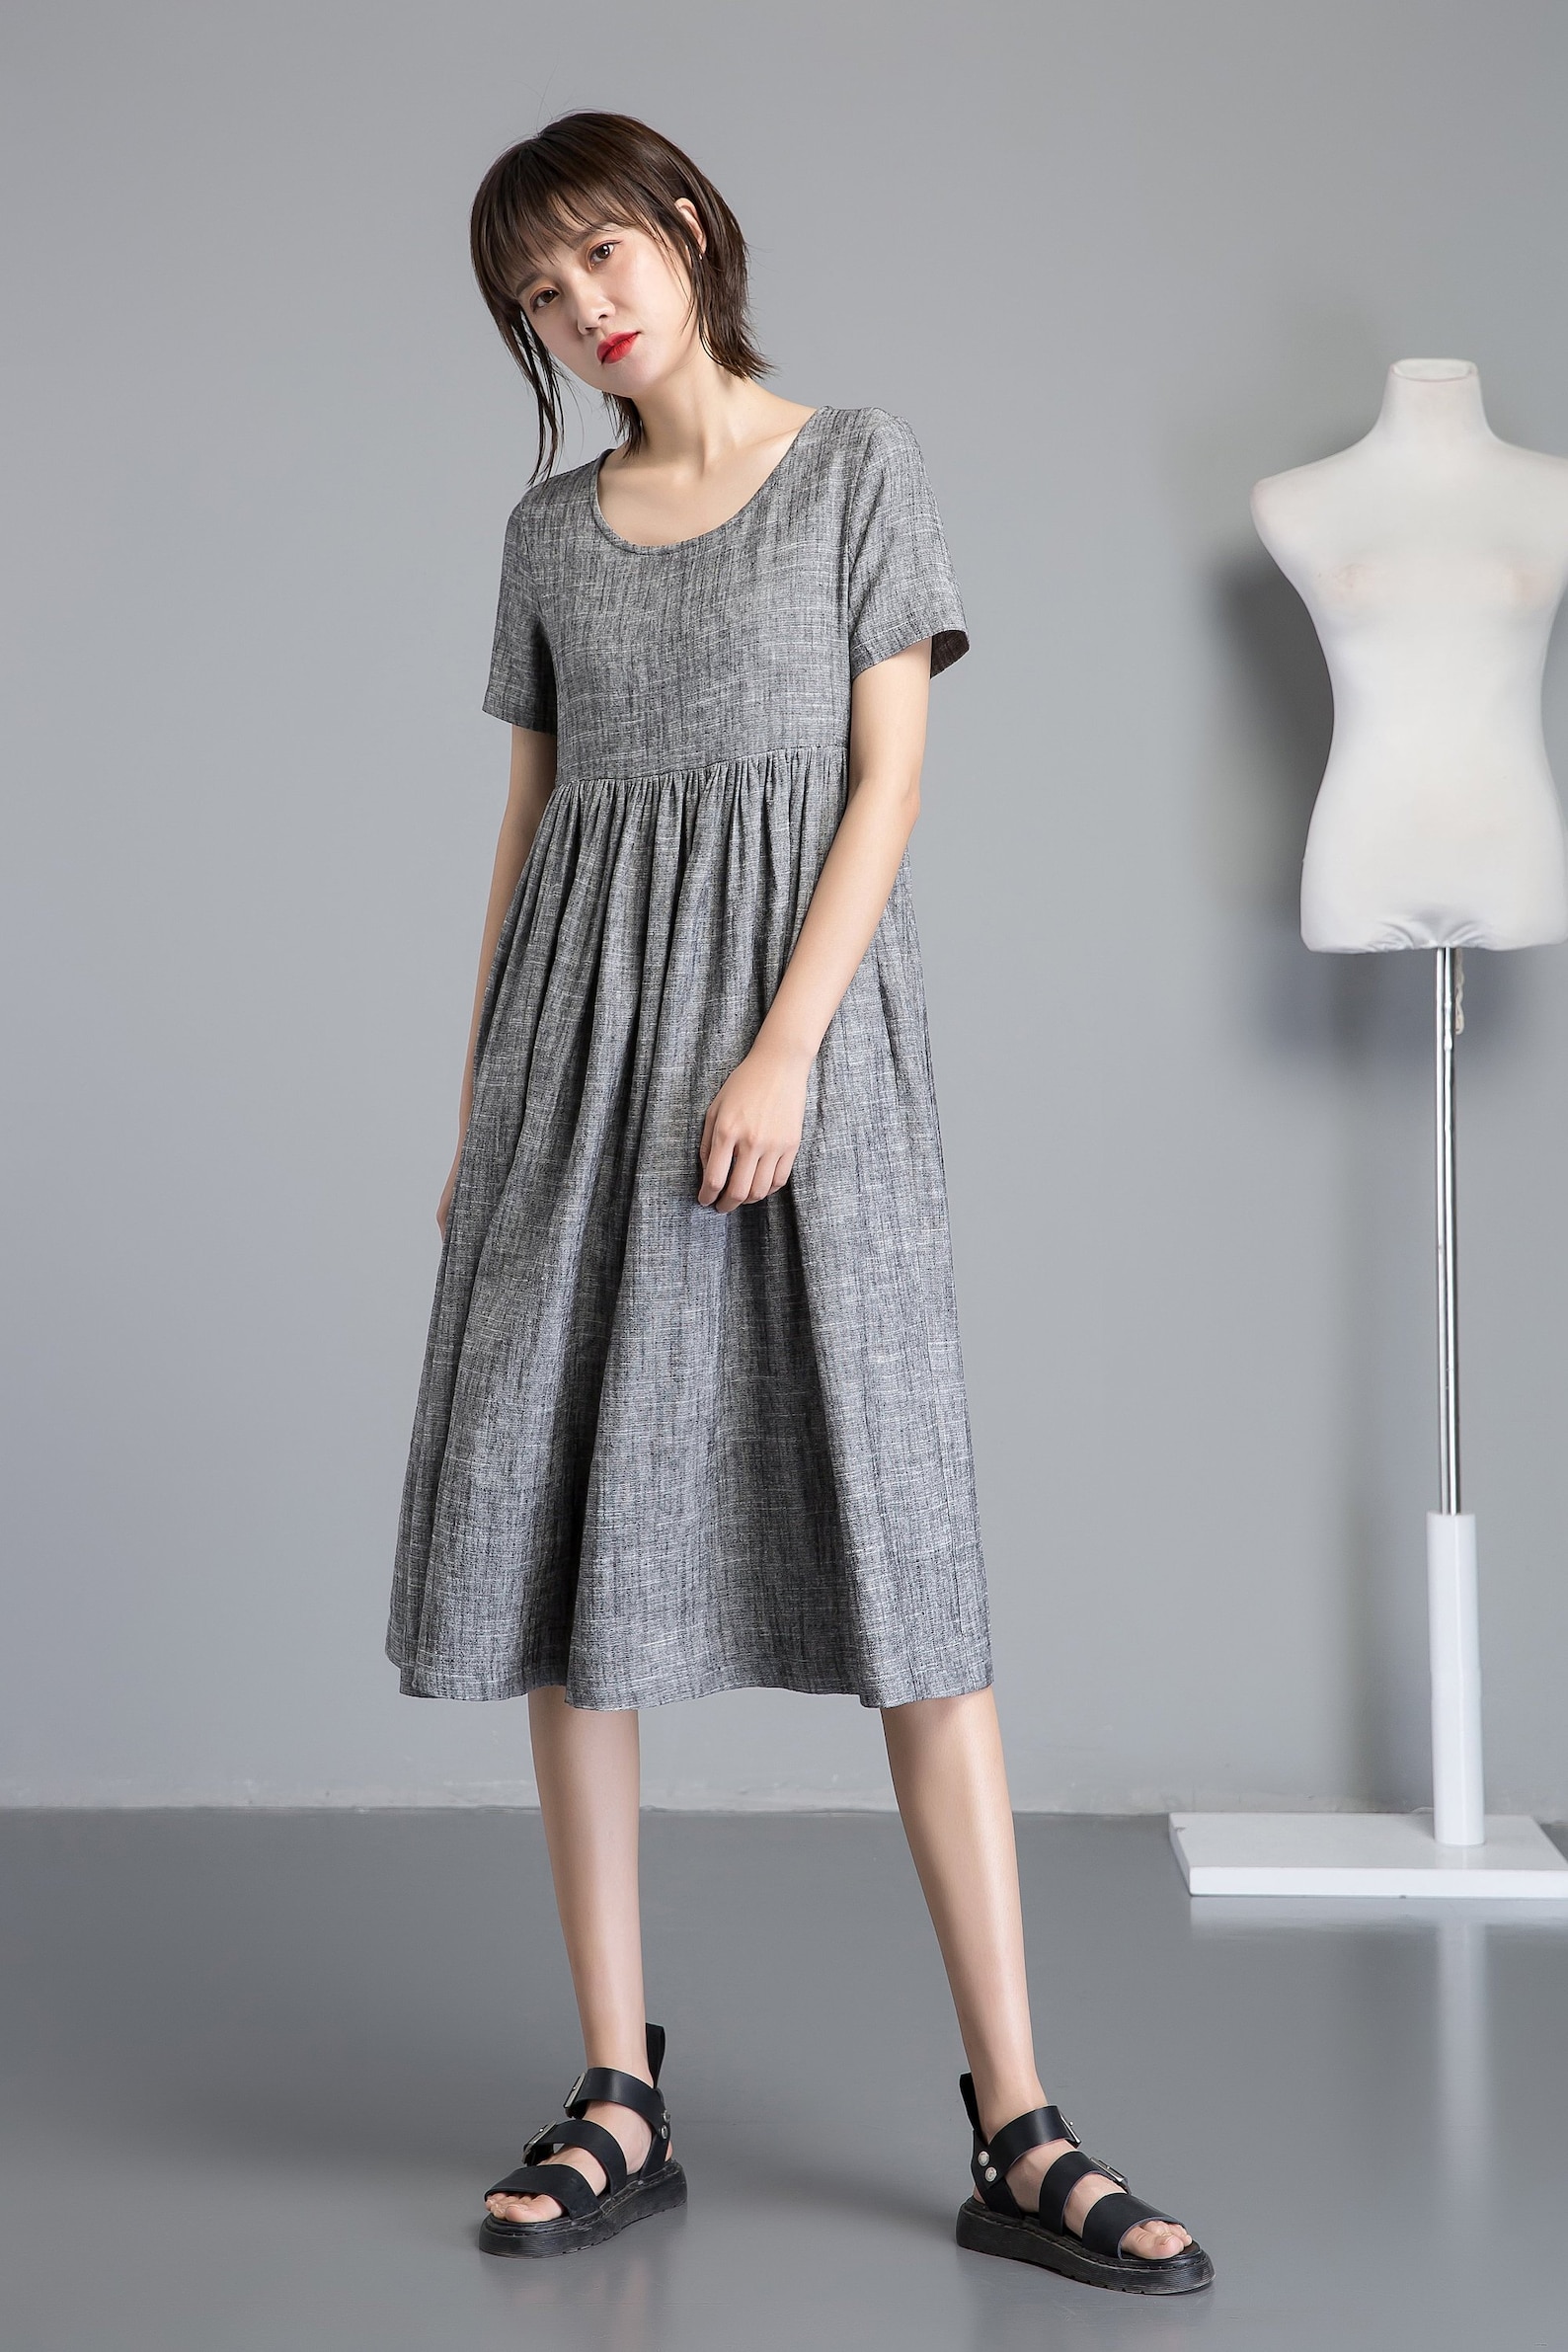 Simple linen dress midi linen dress summer linen dress | Etsy